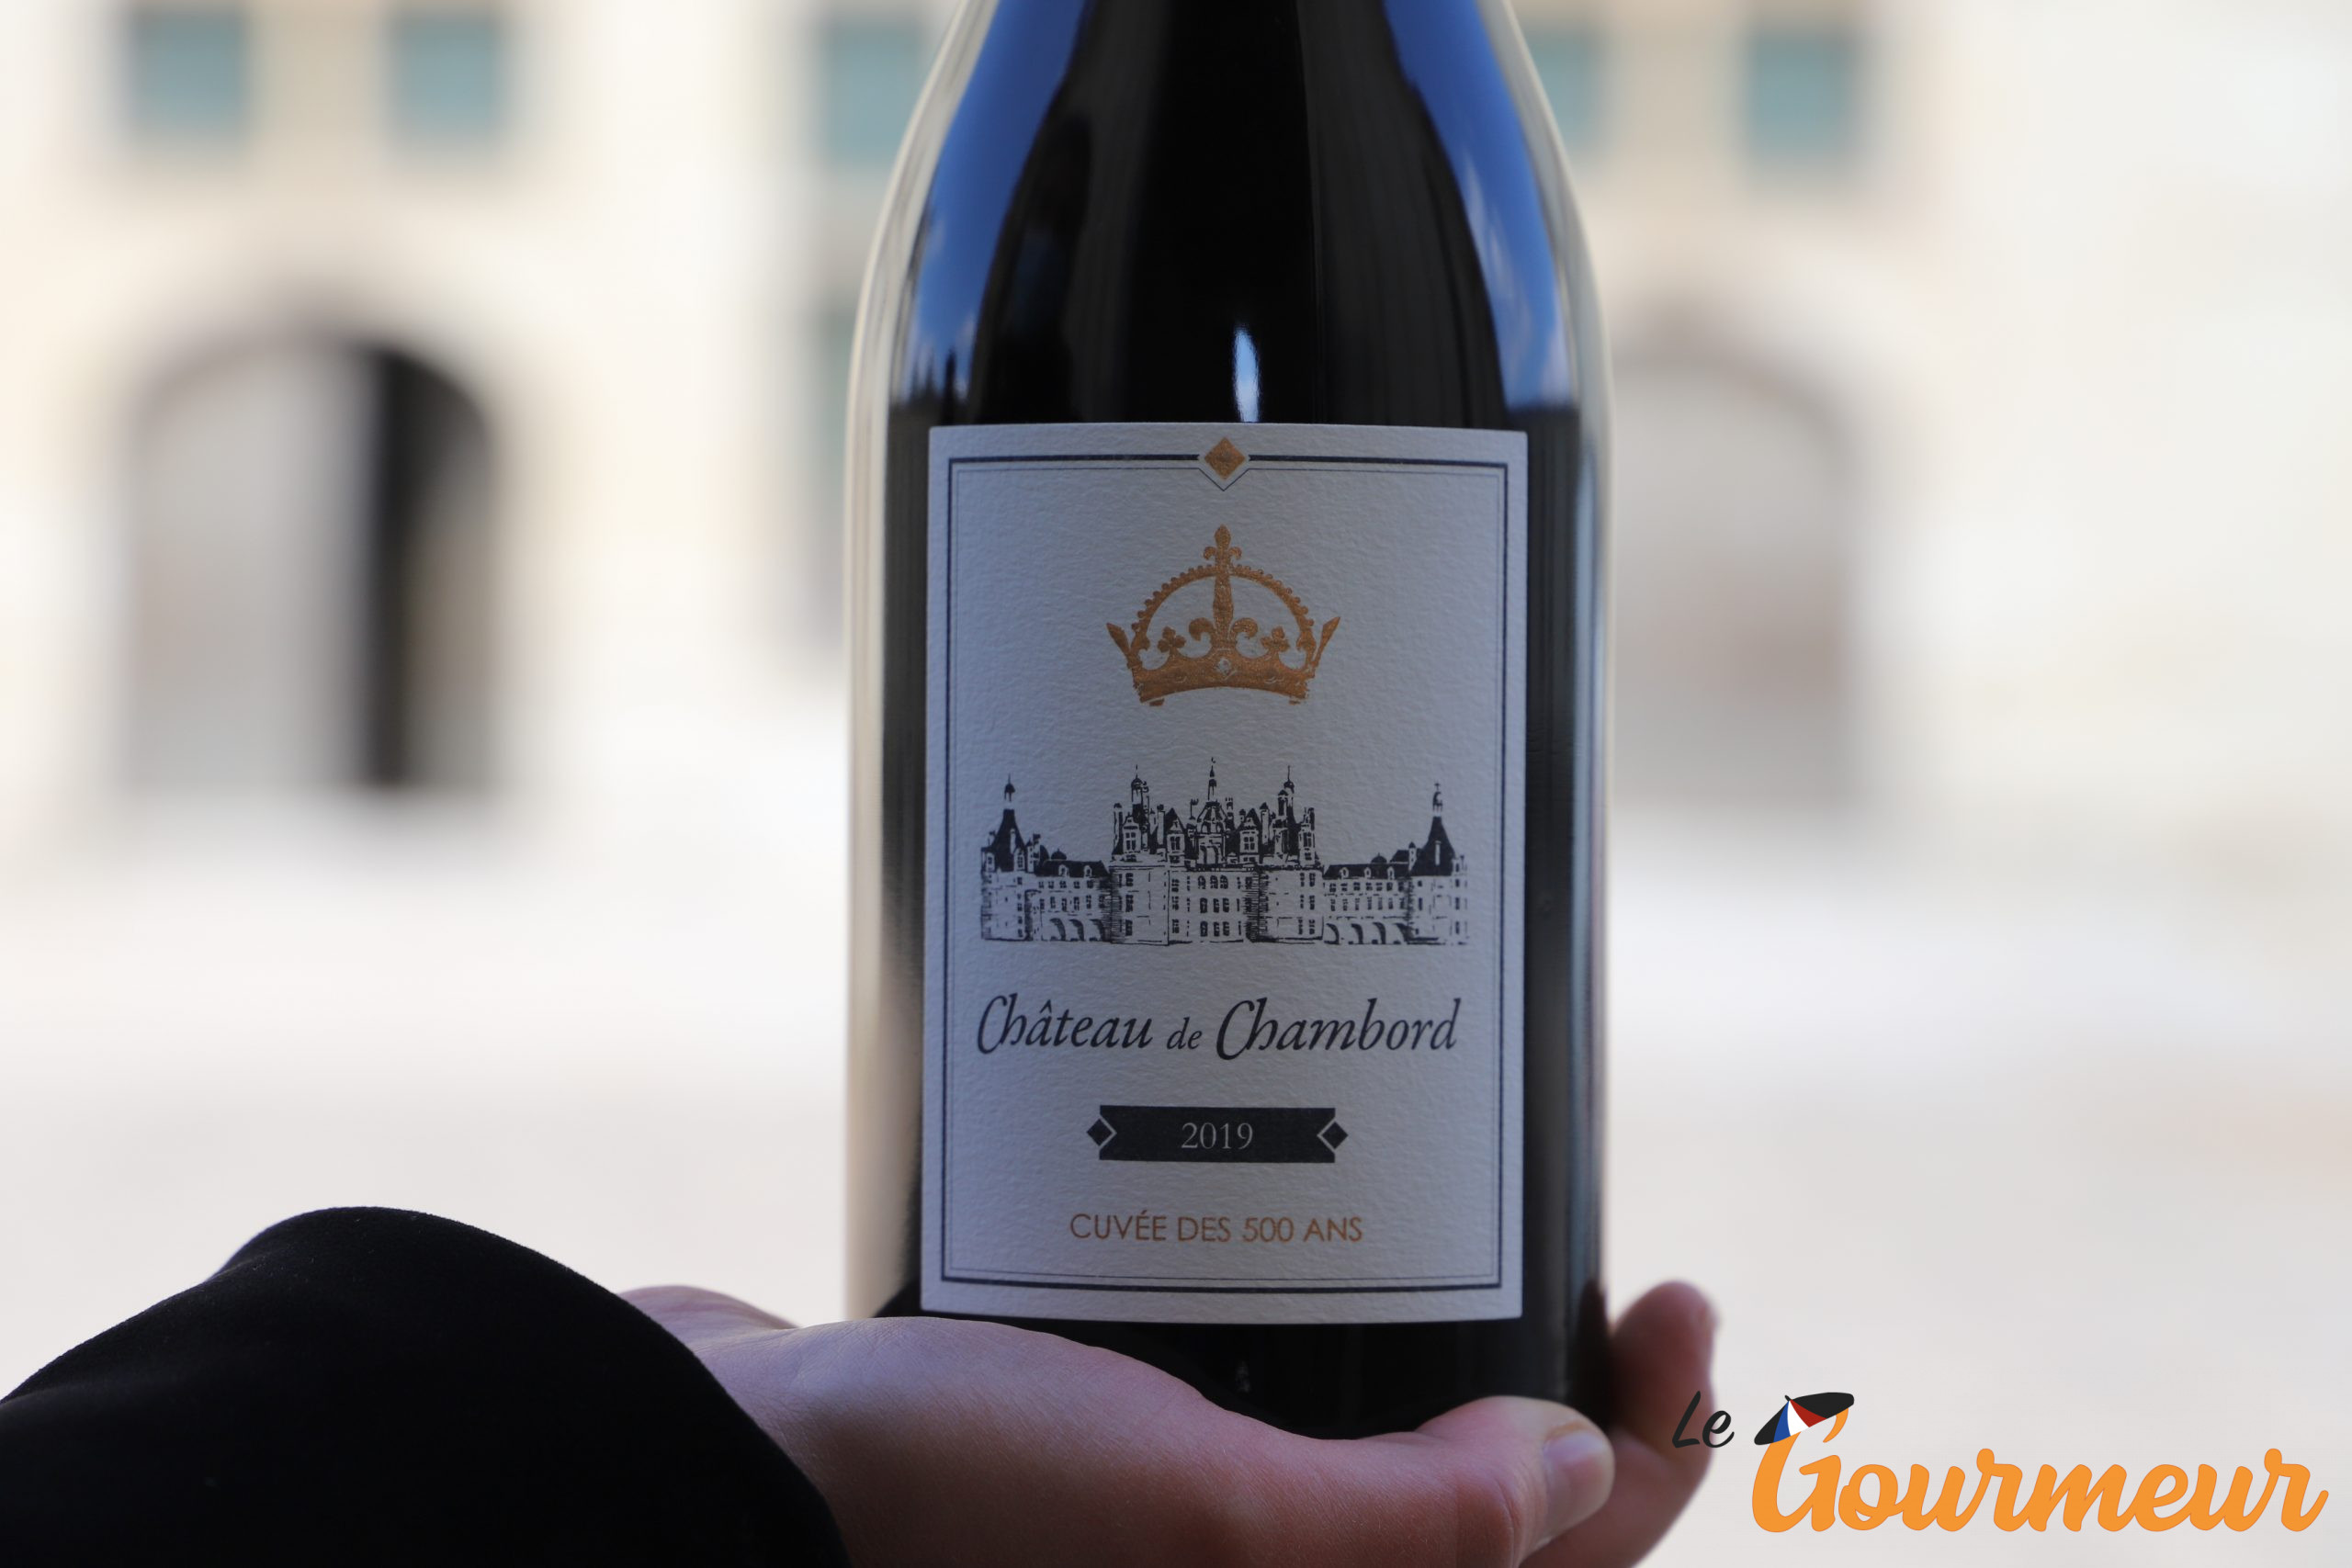 Les vins du chateau de Chambord